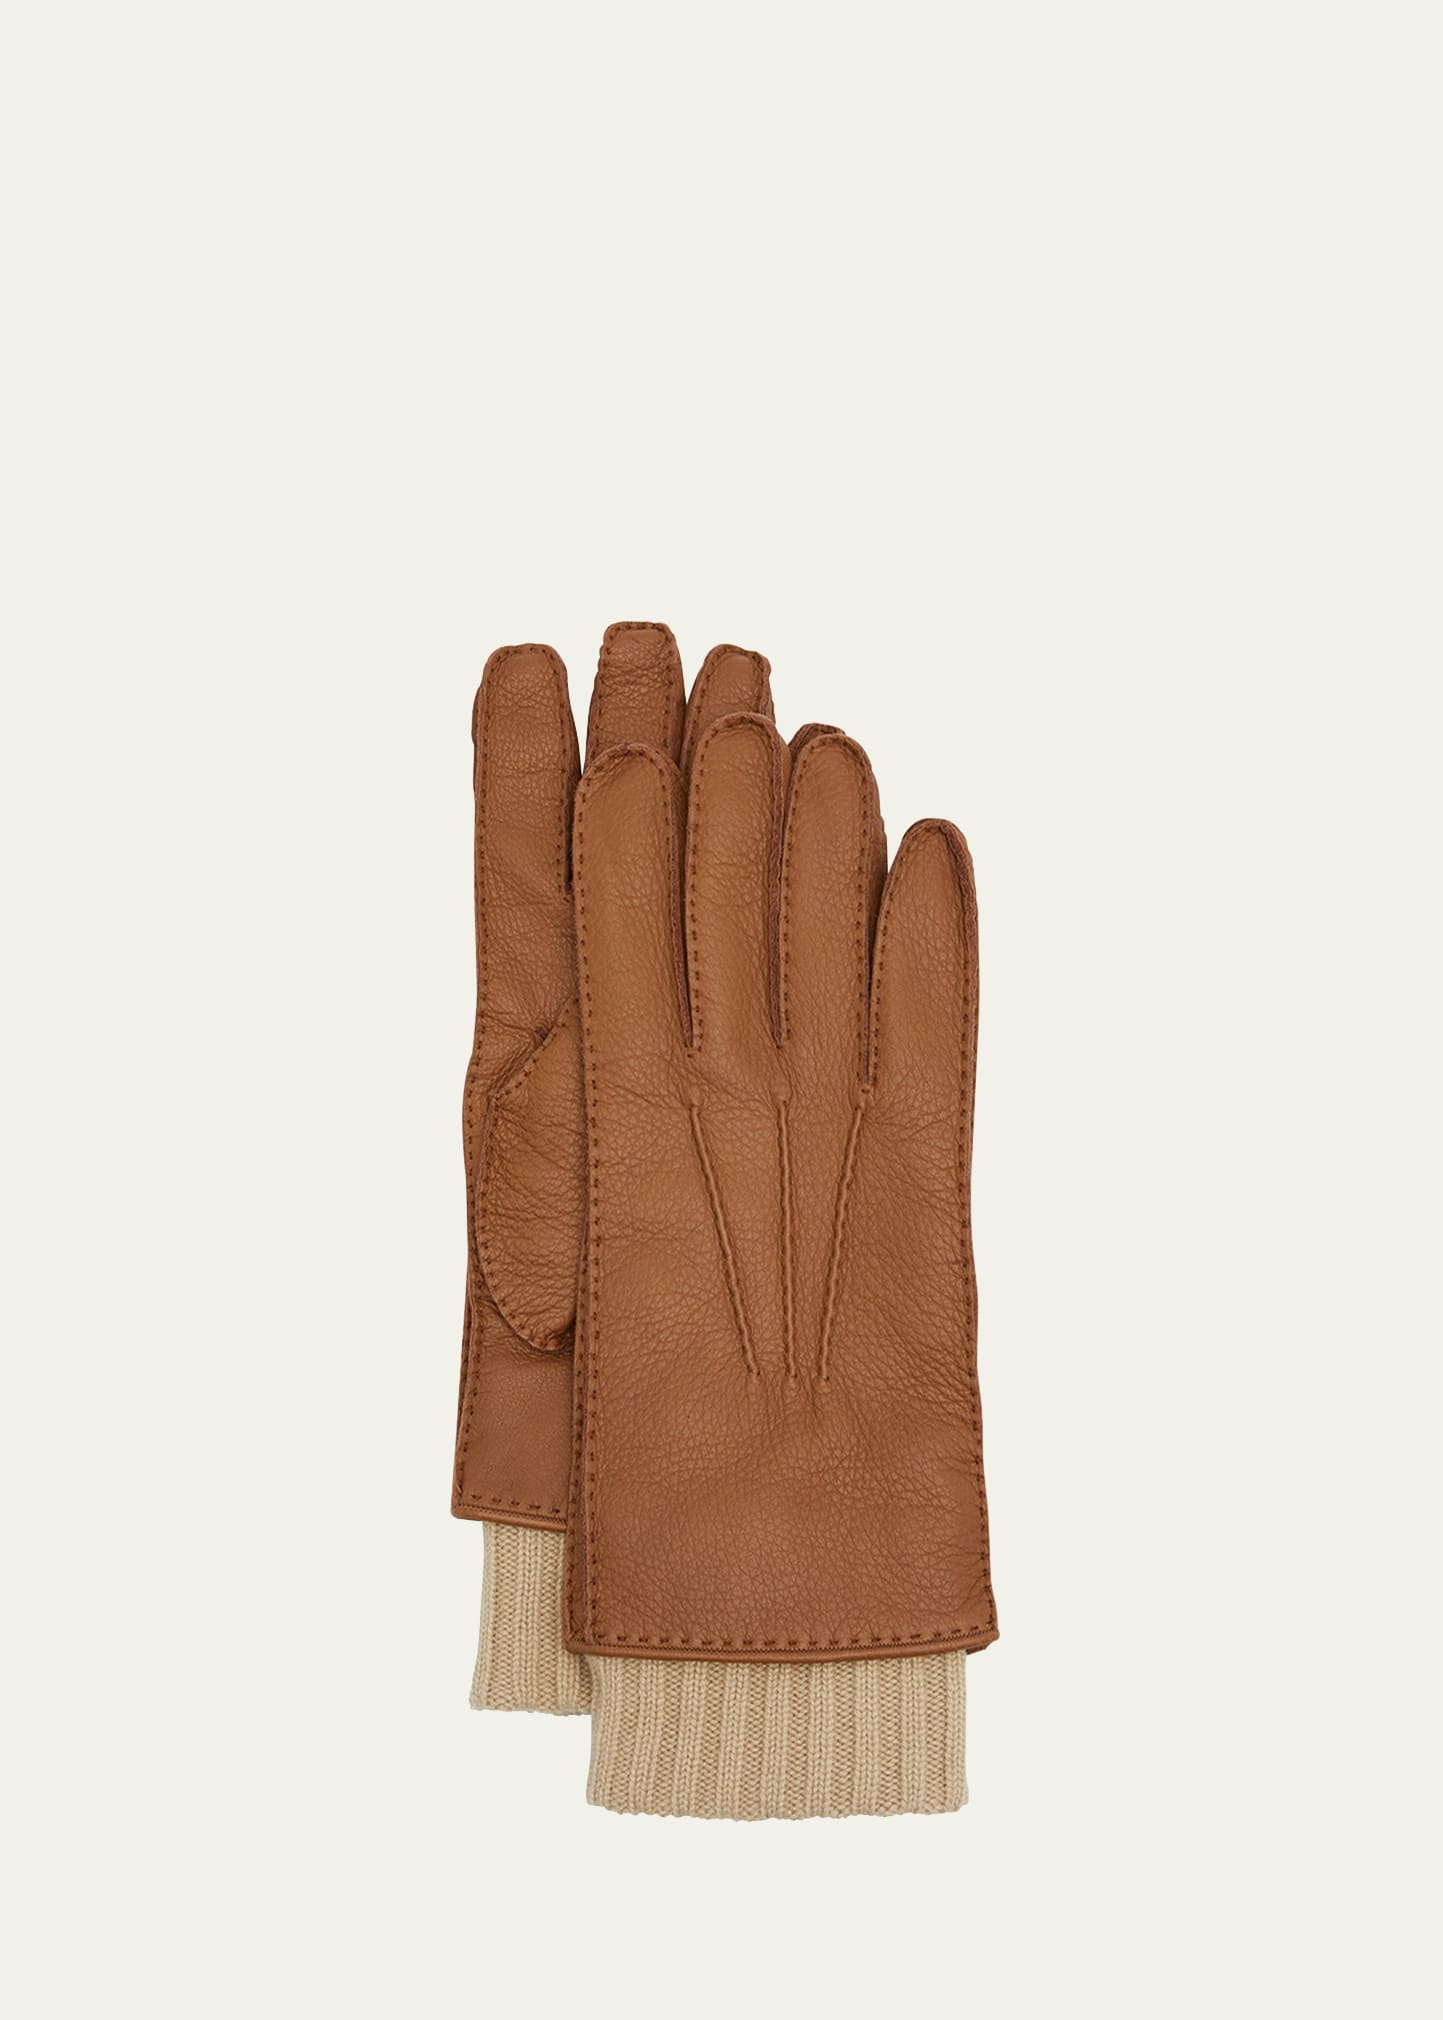 Loro Piana Men's Guanto Leather Gloves